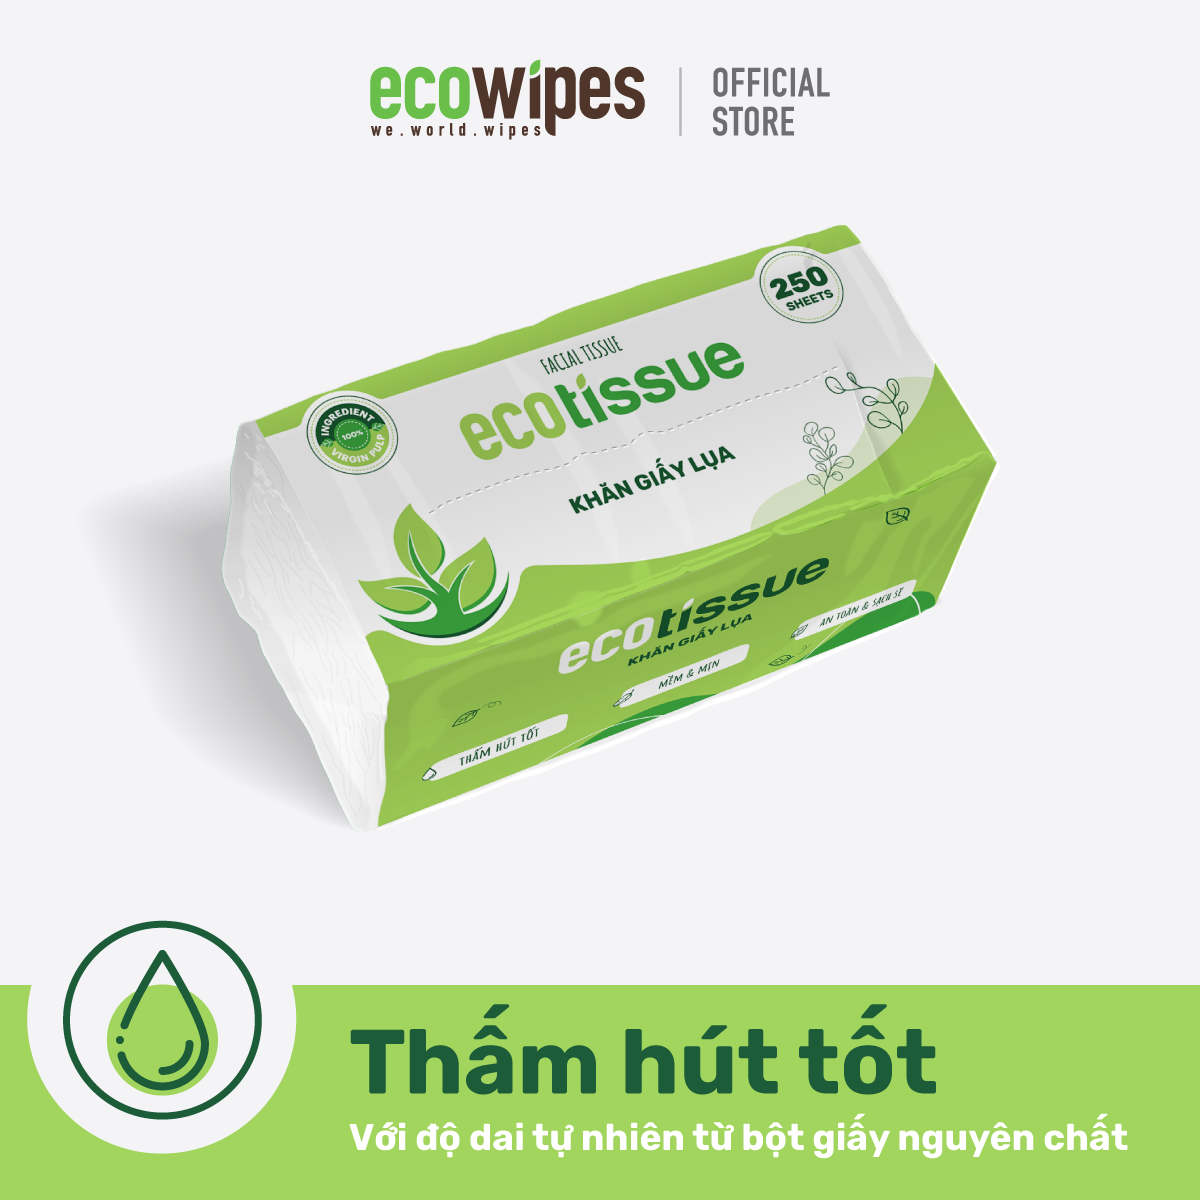 Khăn giấy lụa khăn giấy ăn rút Ecotissue gói 250 tờ thấm hút tốt mềm mịn an toàn sạch sẽ